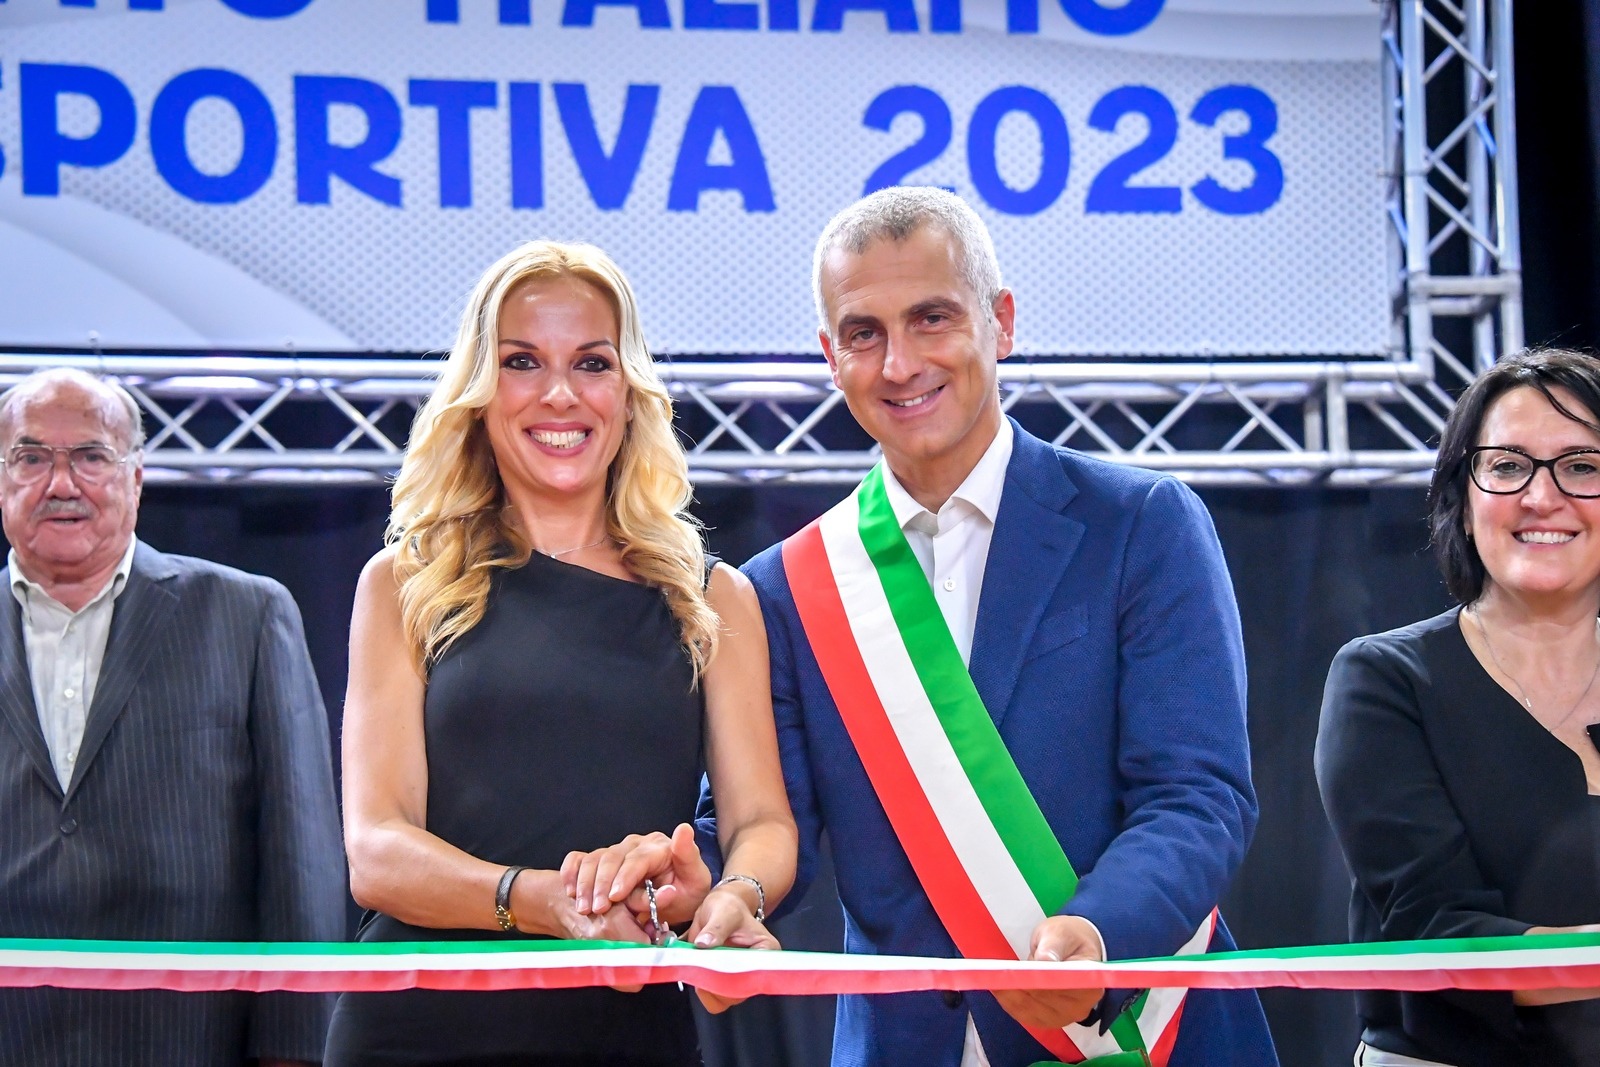 La Presidente Federale inaugura il Campionato Italiano di Danza Sportiva 2023